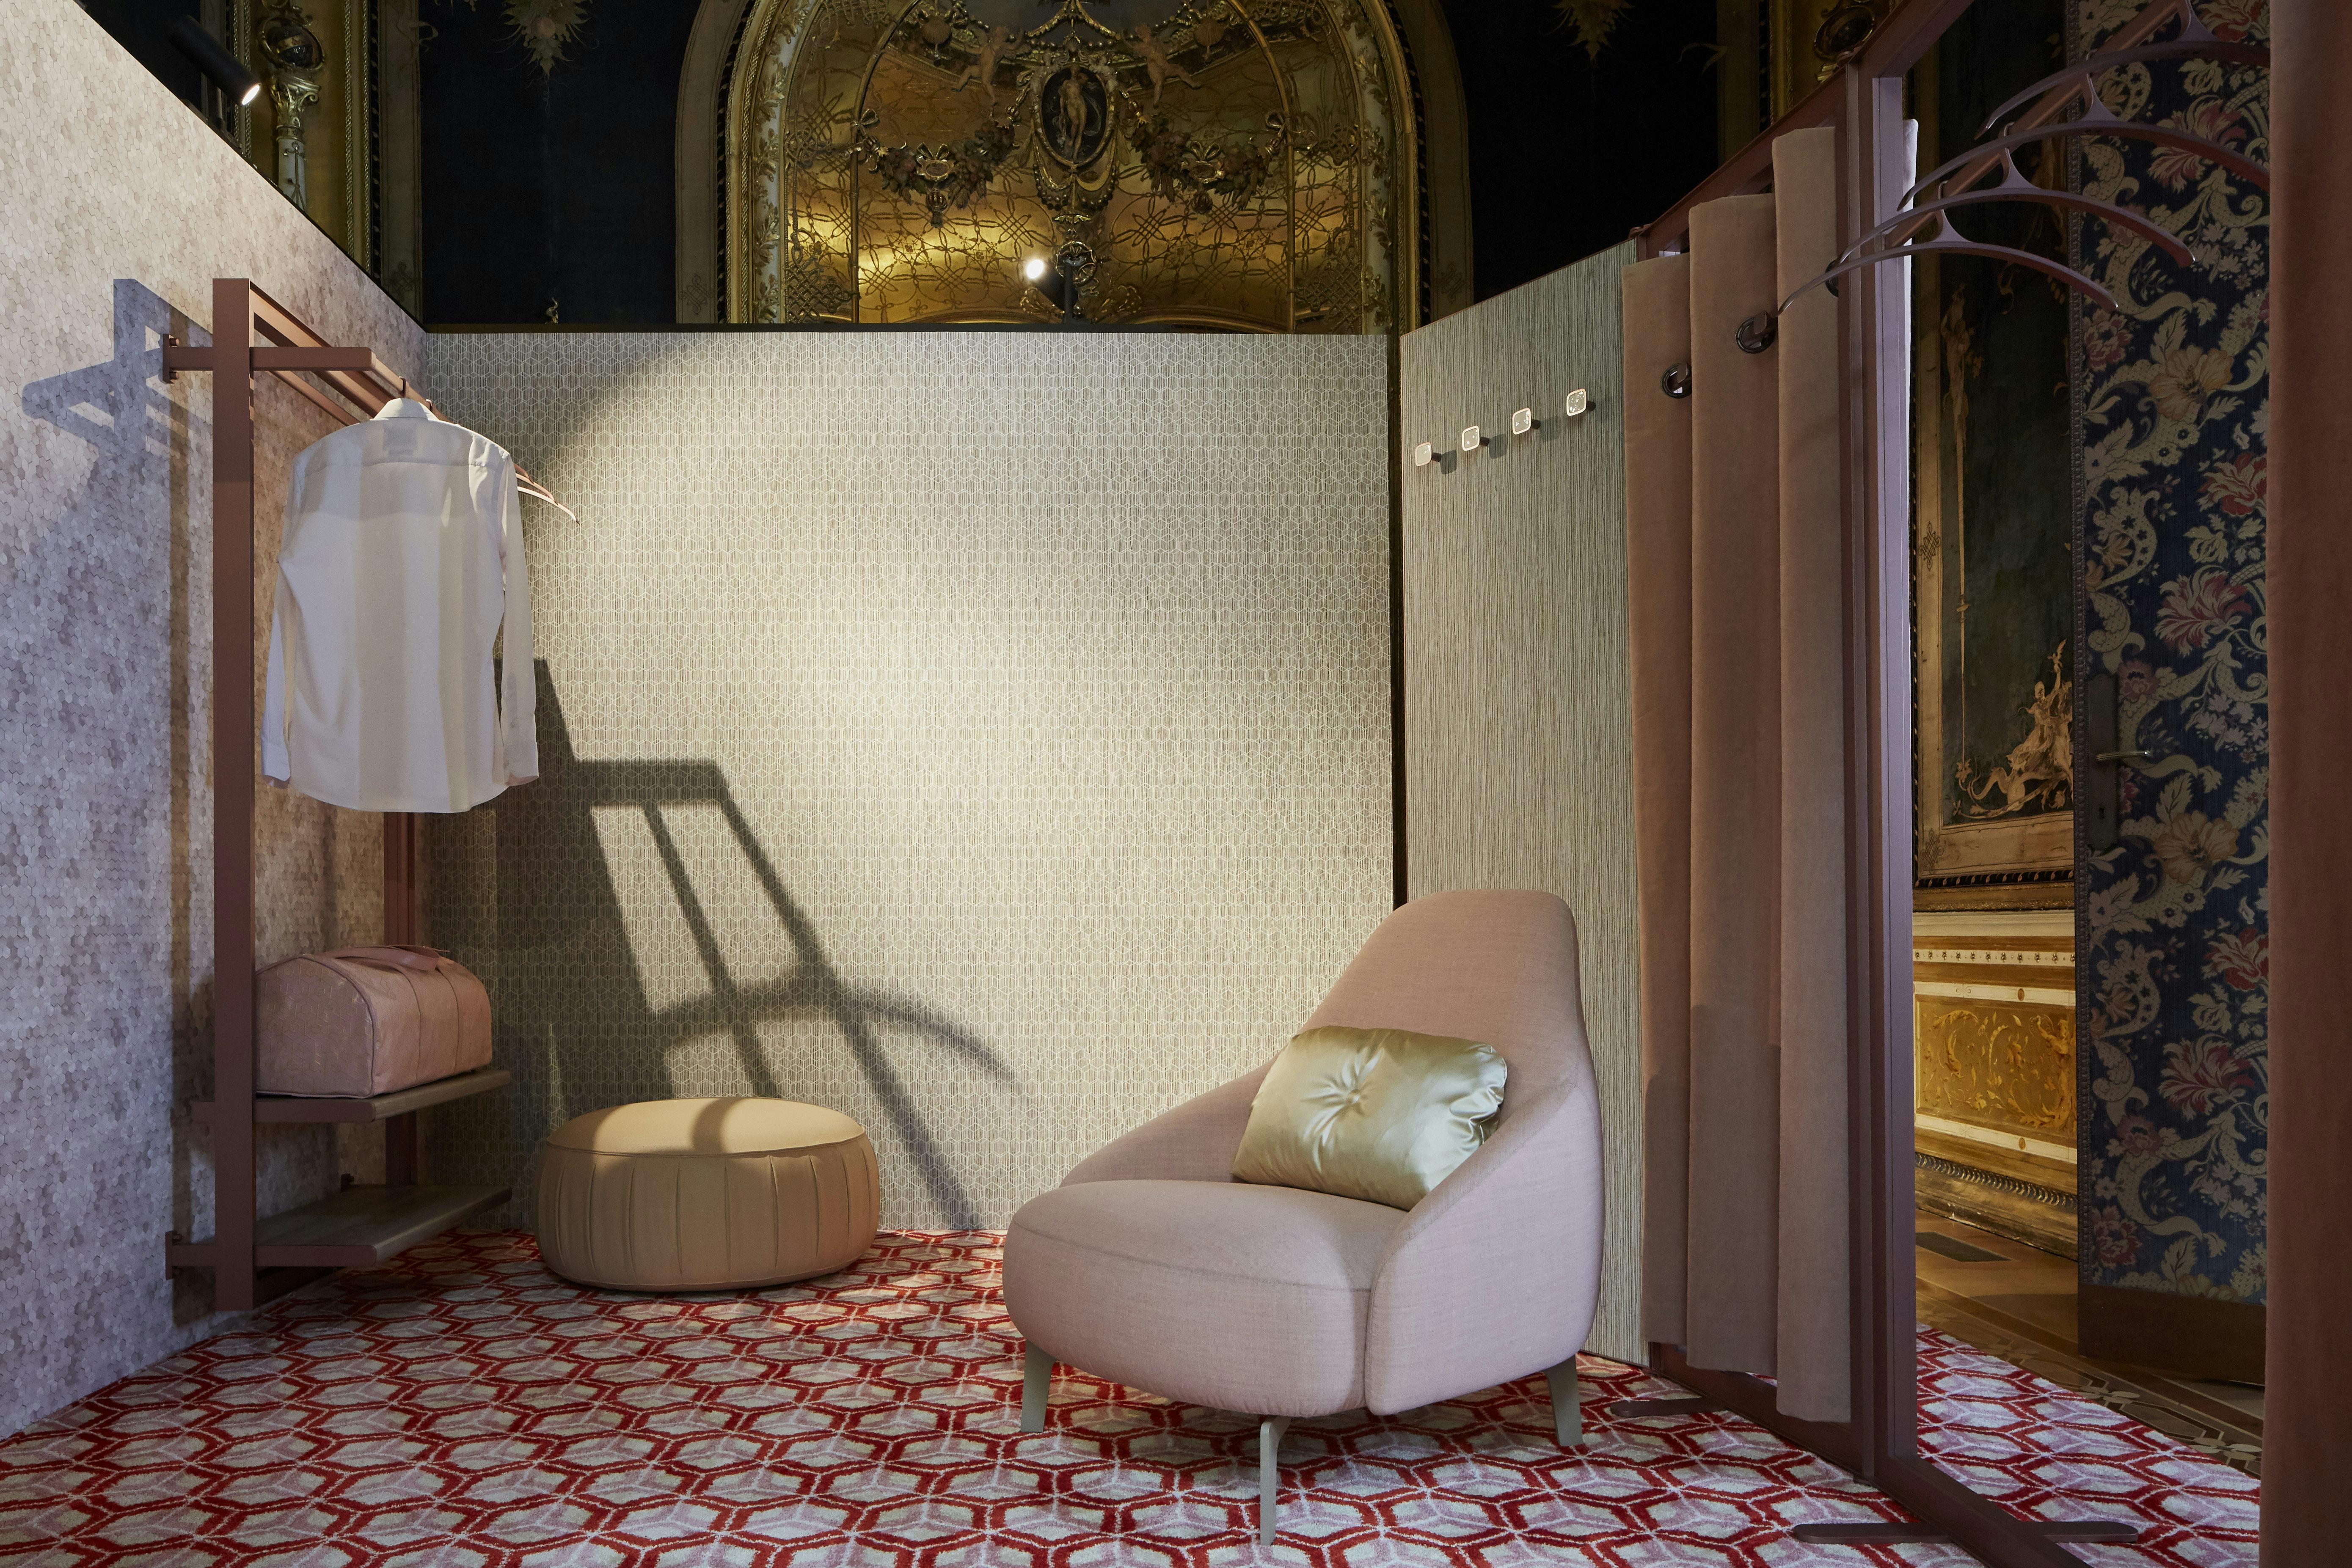 Hotelervaring in museale setting: Edward van Vliet op Masterly, Salone Milaan 2018